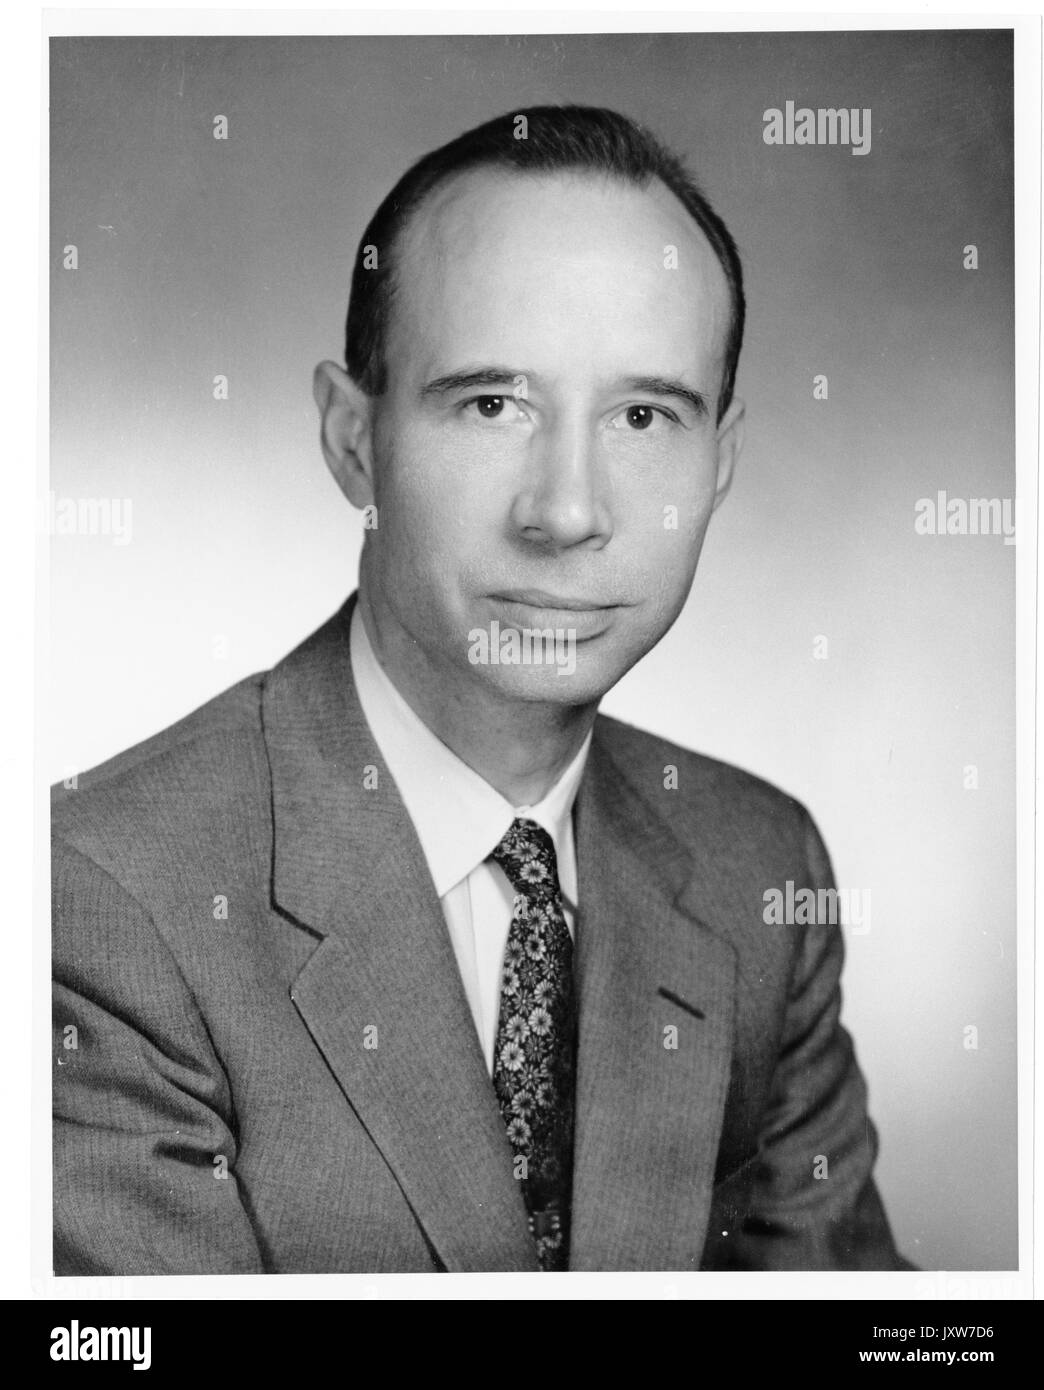 John hallock berthel, portrait photographique, assis, de la poitrine vers le haut, de face, 1960. Banque D'Images